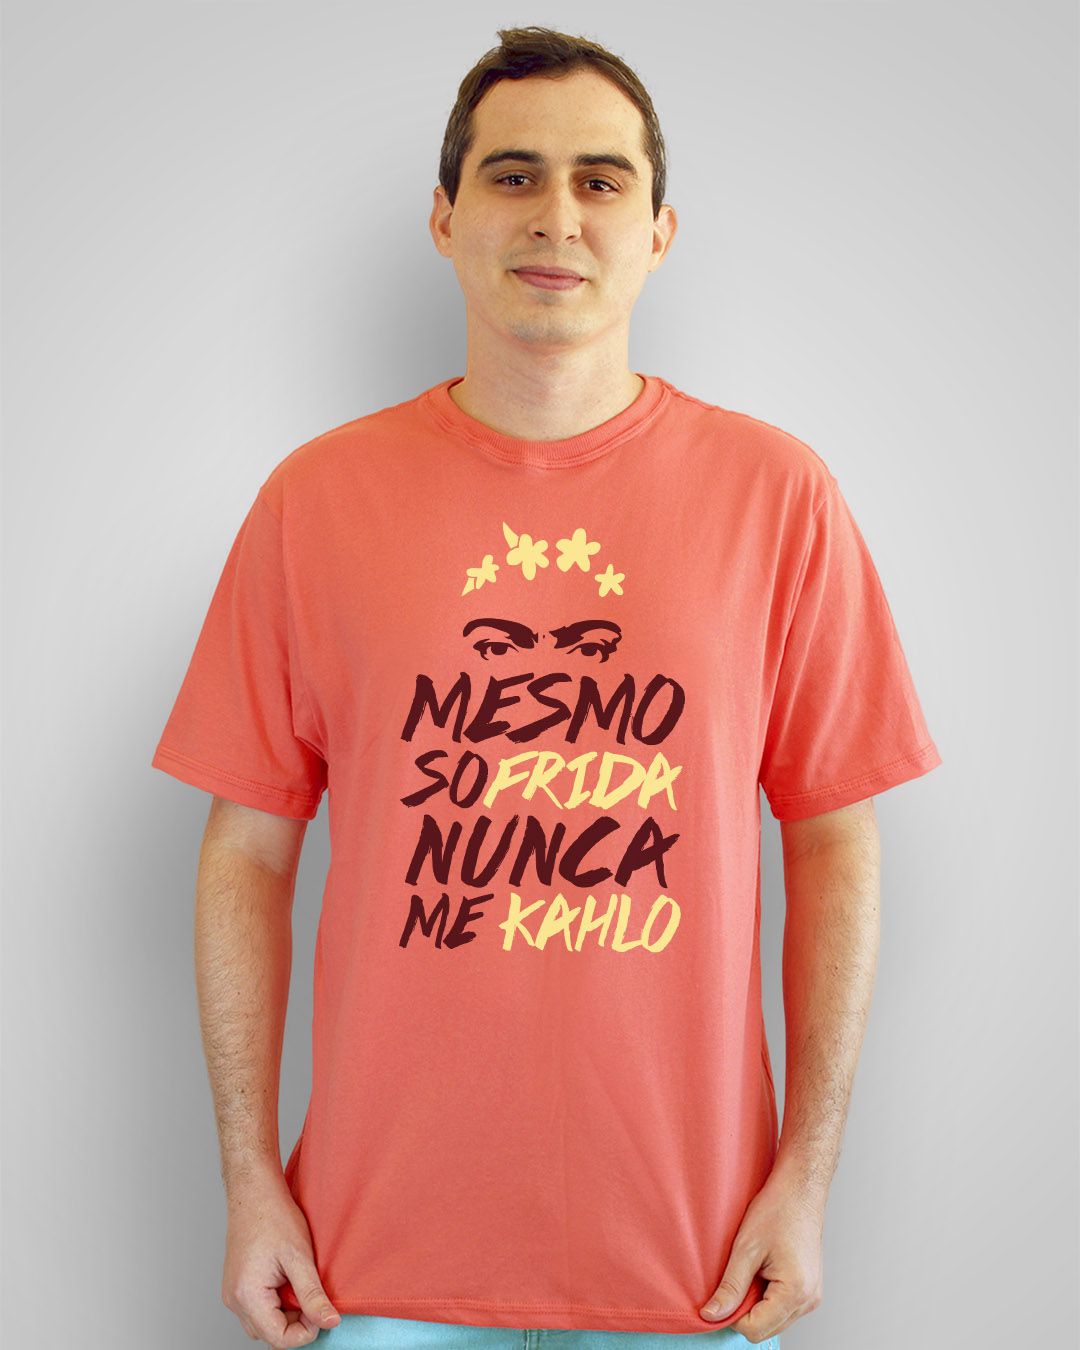 Camiseta Mesmo sofrida, nunca me kahlo - Frida Kahlo